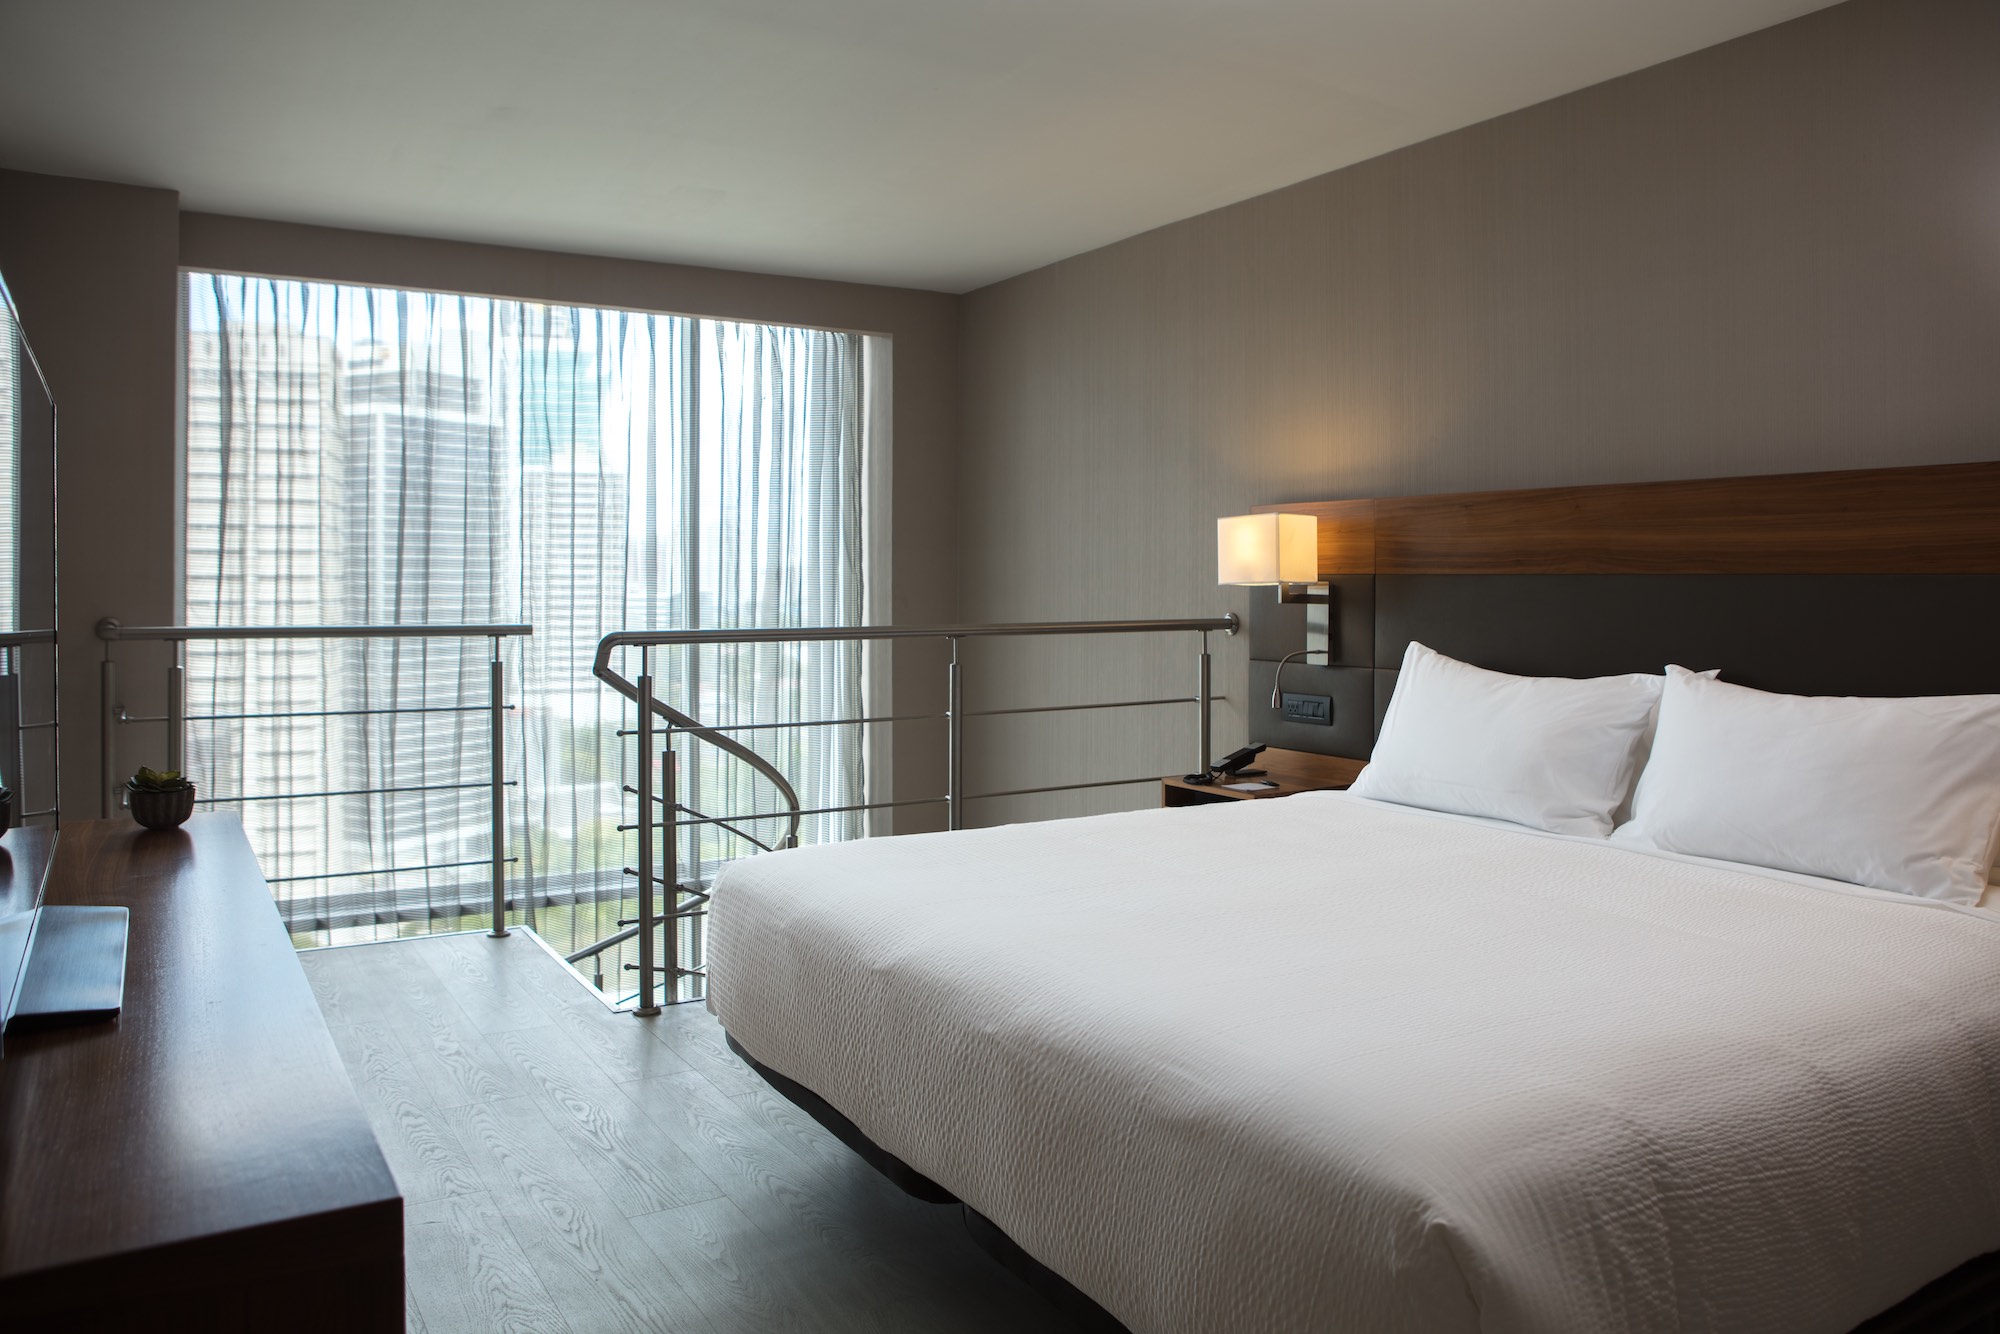 AC Hotel by Marriott Panama City recibe Premio Magno de Diseño Arquitectónico